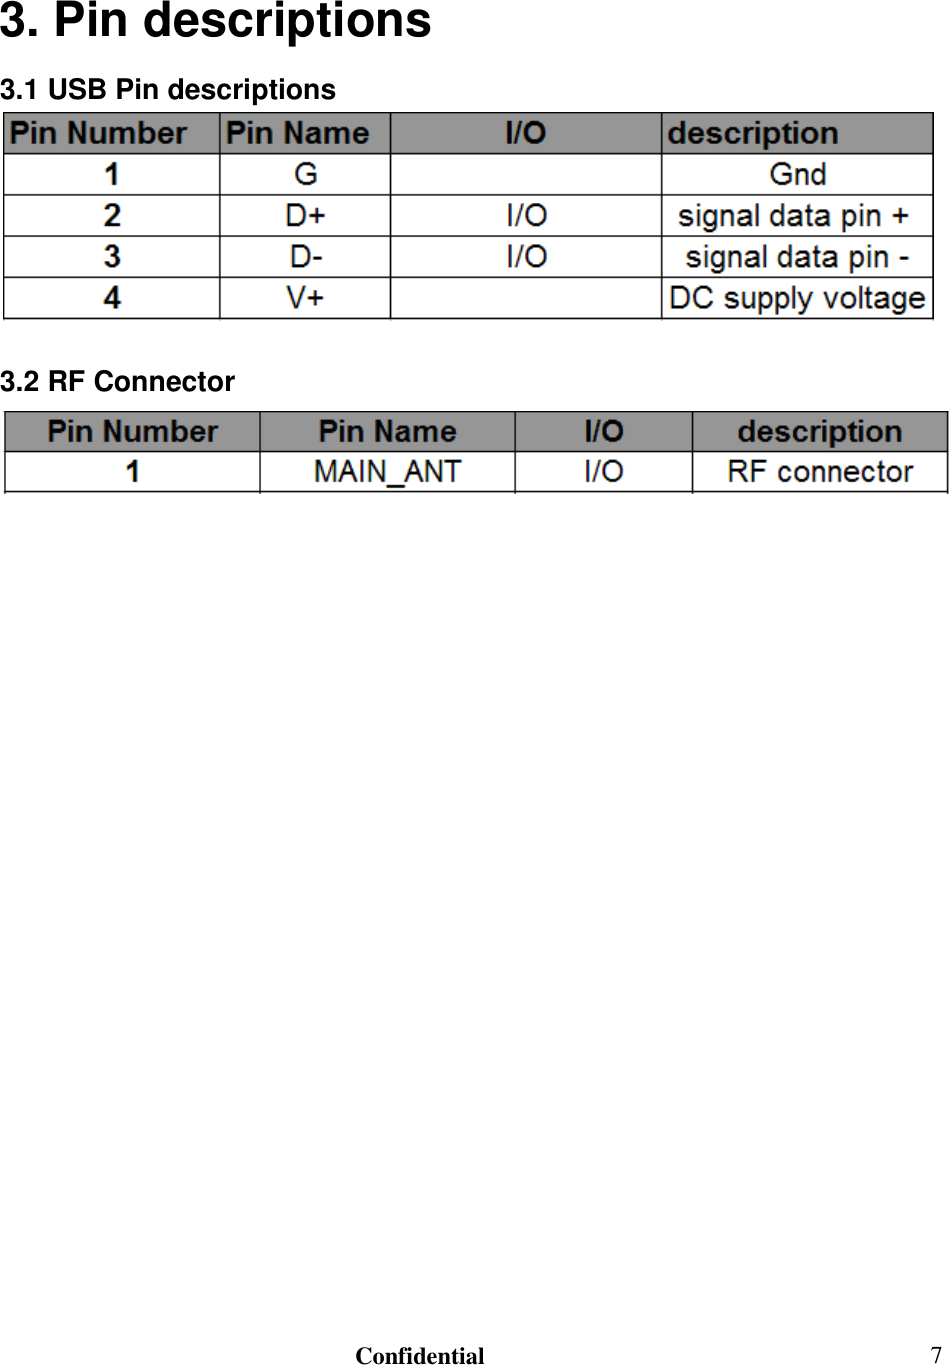                                                                               Confidential  73. Pin descriptions 3.1 USB Pin descriptions   3.2 RF Connector                        